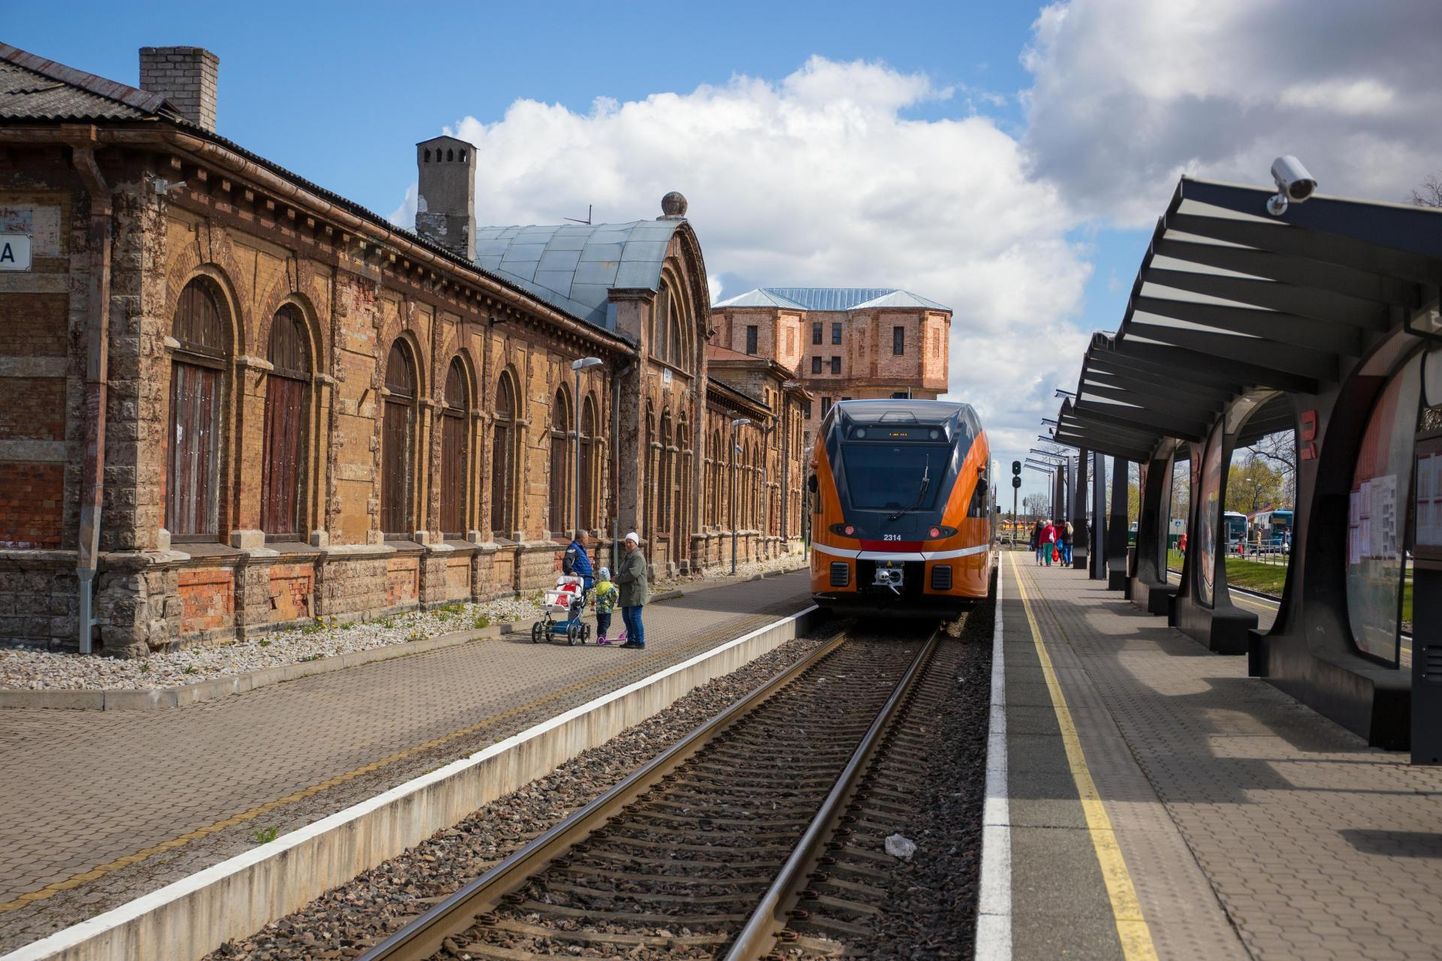 Tapa linnapäevade raames sõlmitakse perroonil omavalitsuse ja Eesti Raudtee vaheline leping ajaloolise vaksalihoone renoveerimise kohta.